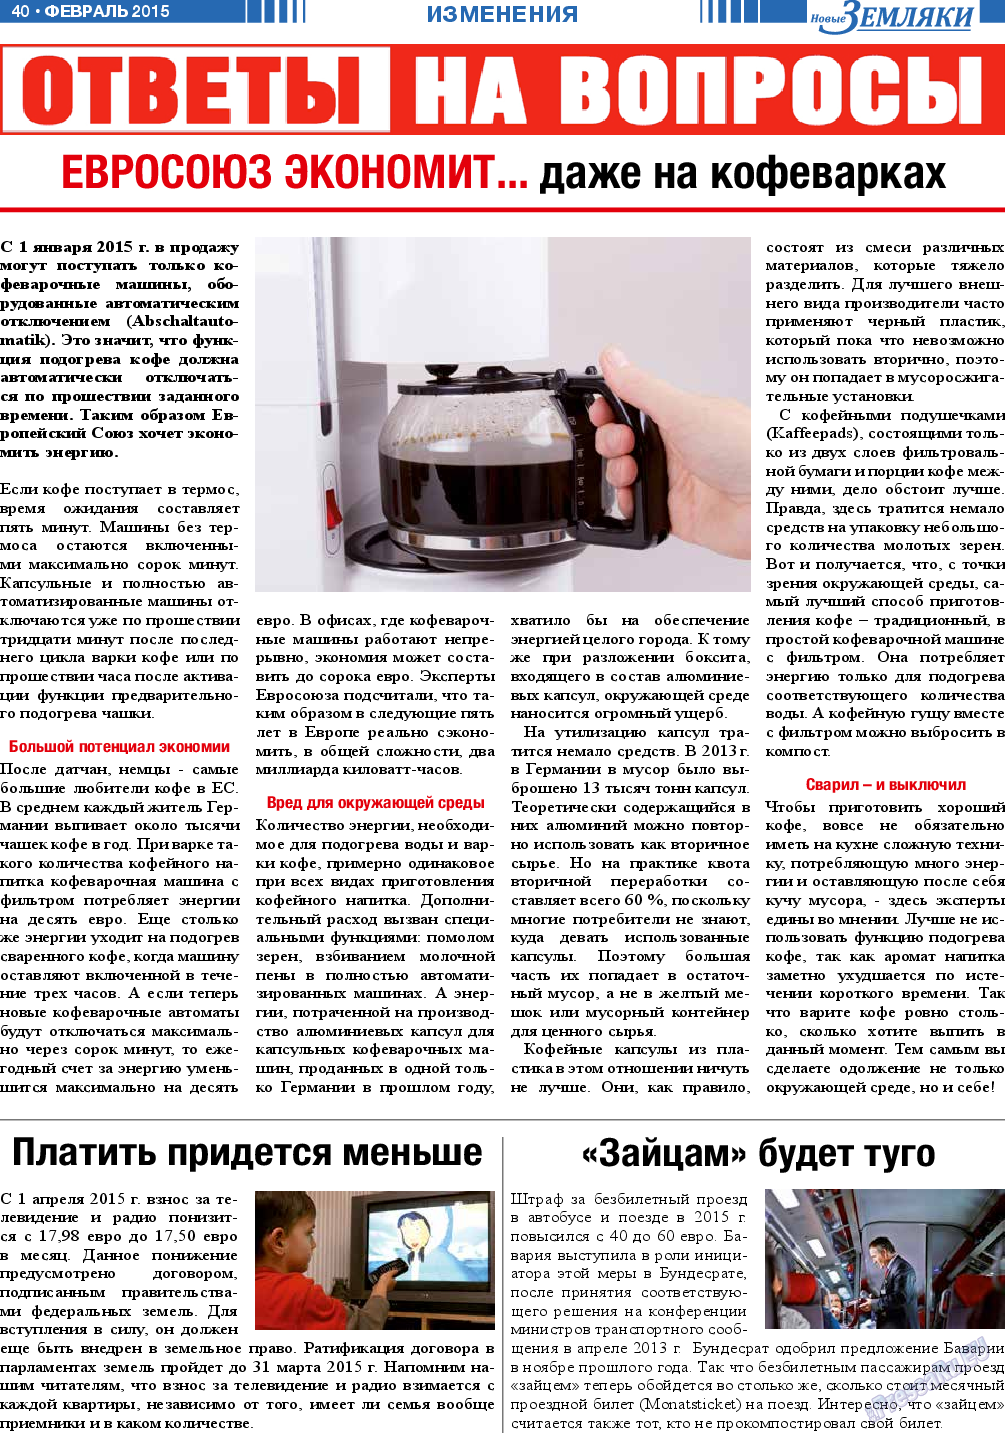 Новые Земляки, газета. 2015 №2 стр.40